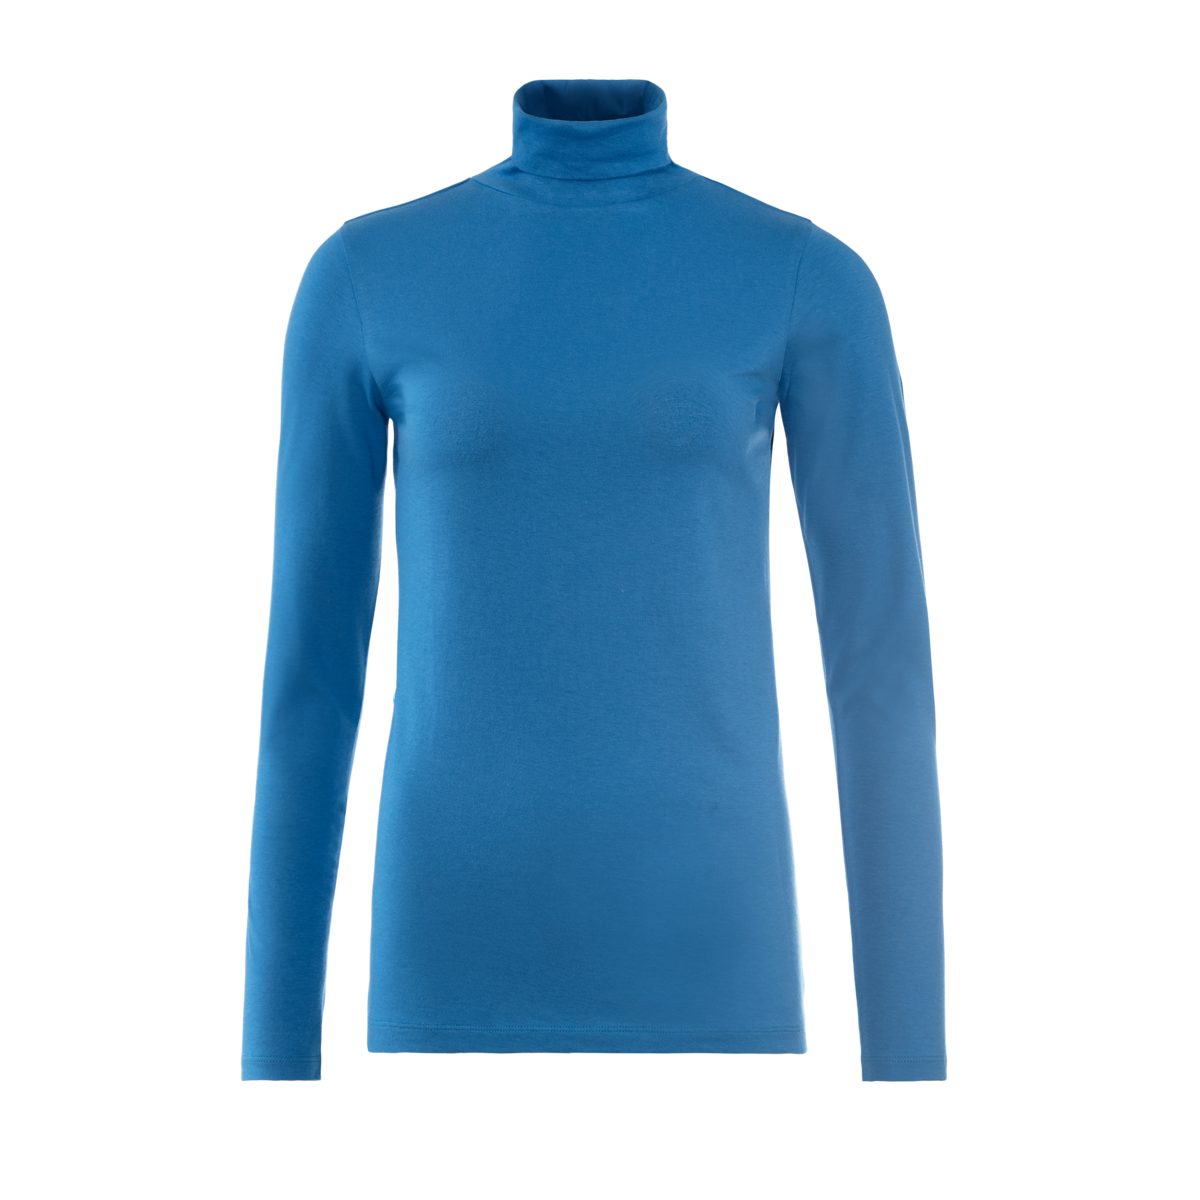 LIVING CRAFTS Rollkragenshirt NIA Feines Langarm-Shirt Blue mit Retro Rollkragen angesagtem